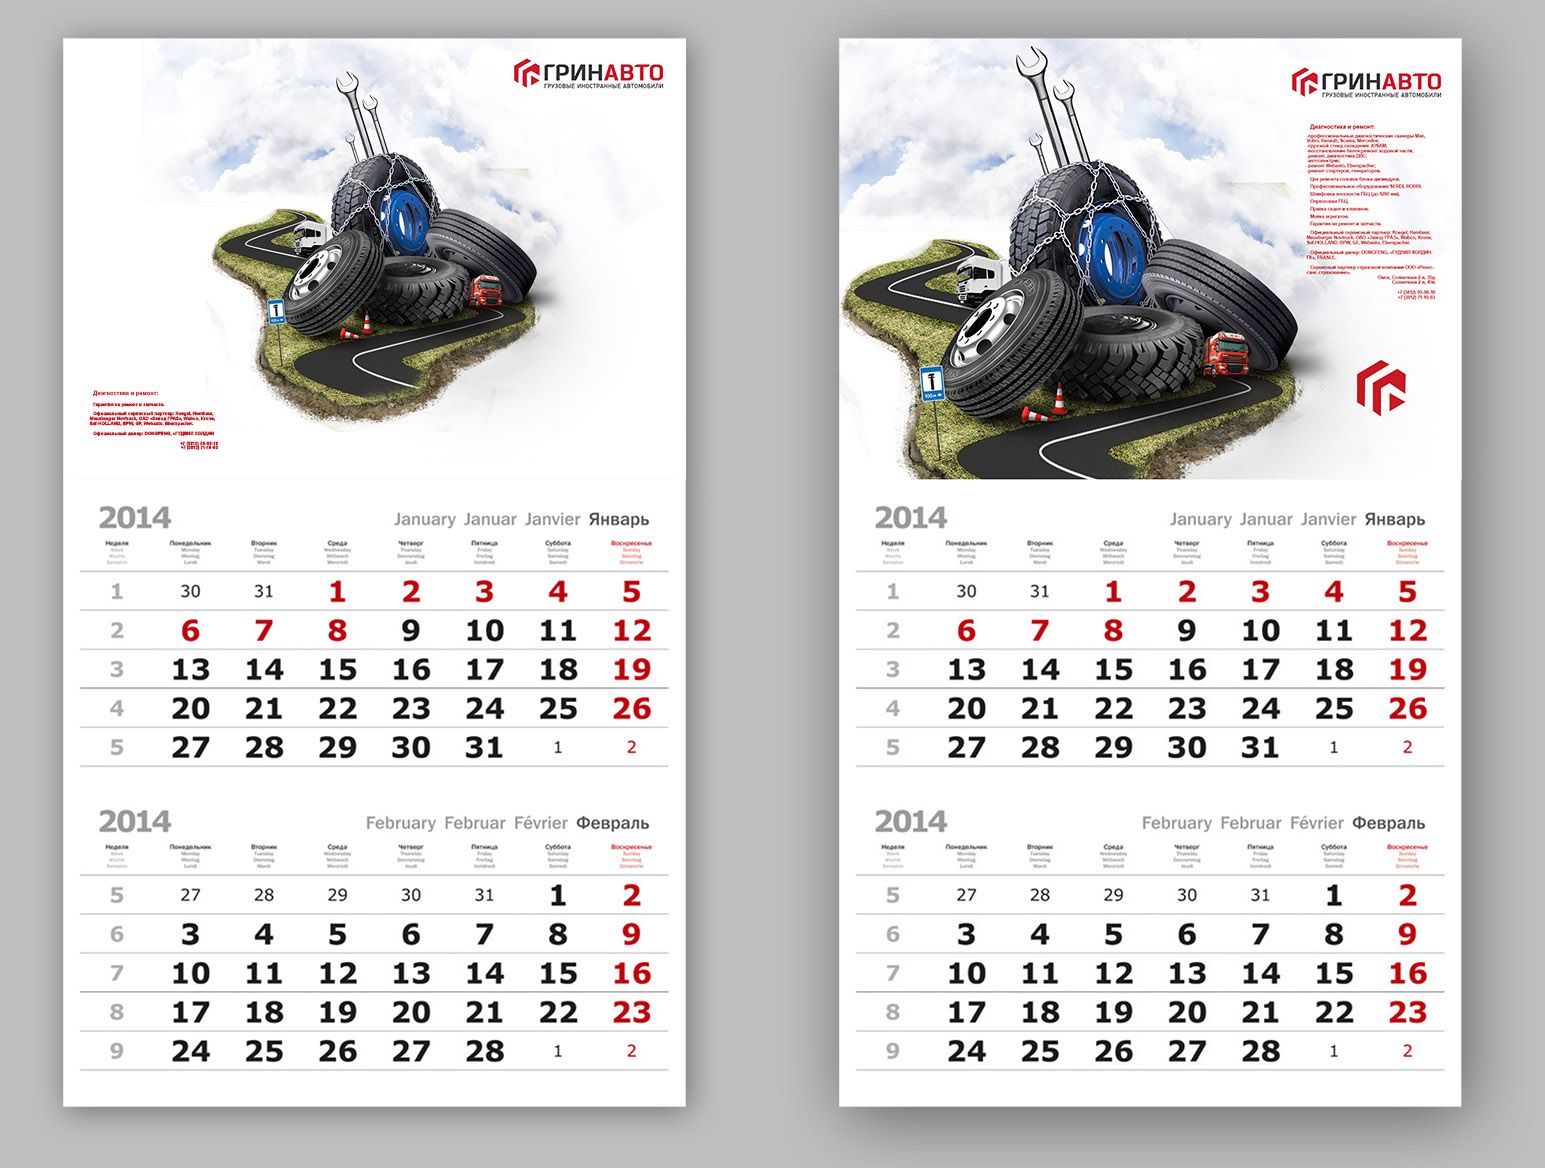 Иллюстрация для календаря, открытки - дизайнер Shostak_Inna